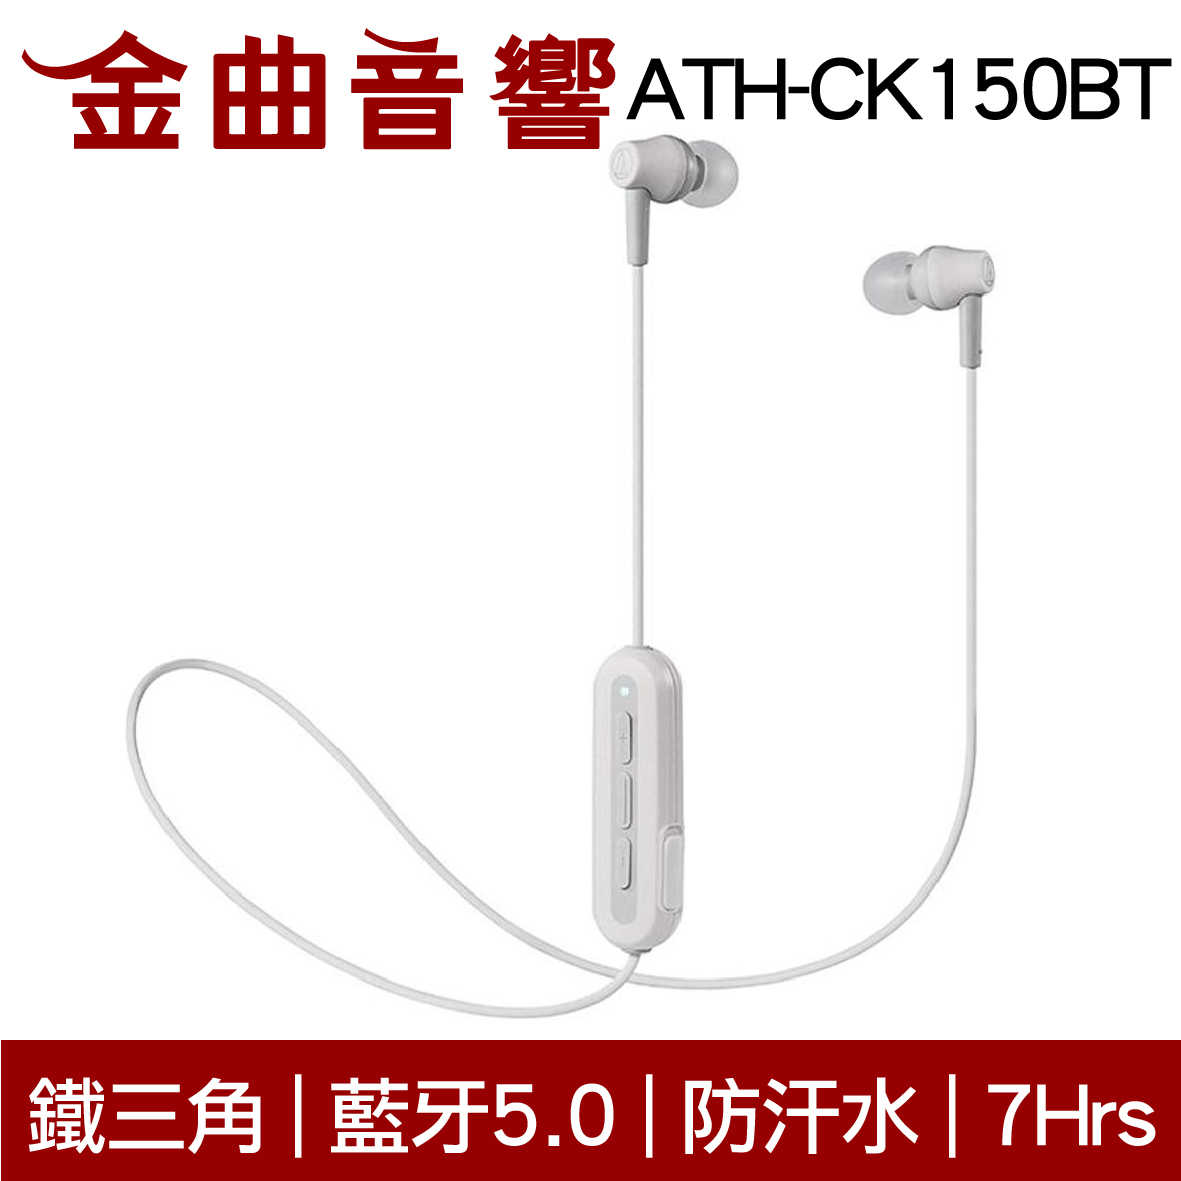 鐵三角 ATH-CK150BT 紅色 可通話 無線 藍牙 耳道式耳機 | 金曲音響